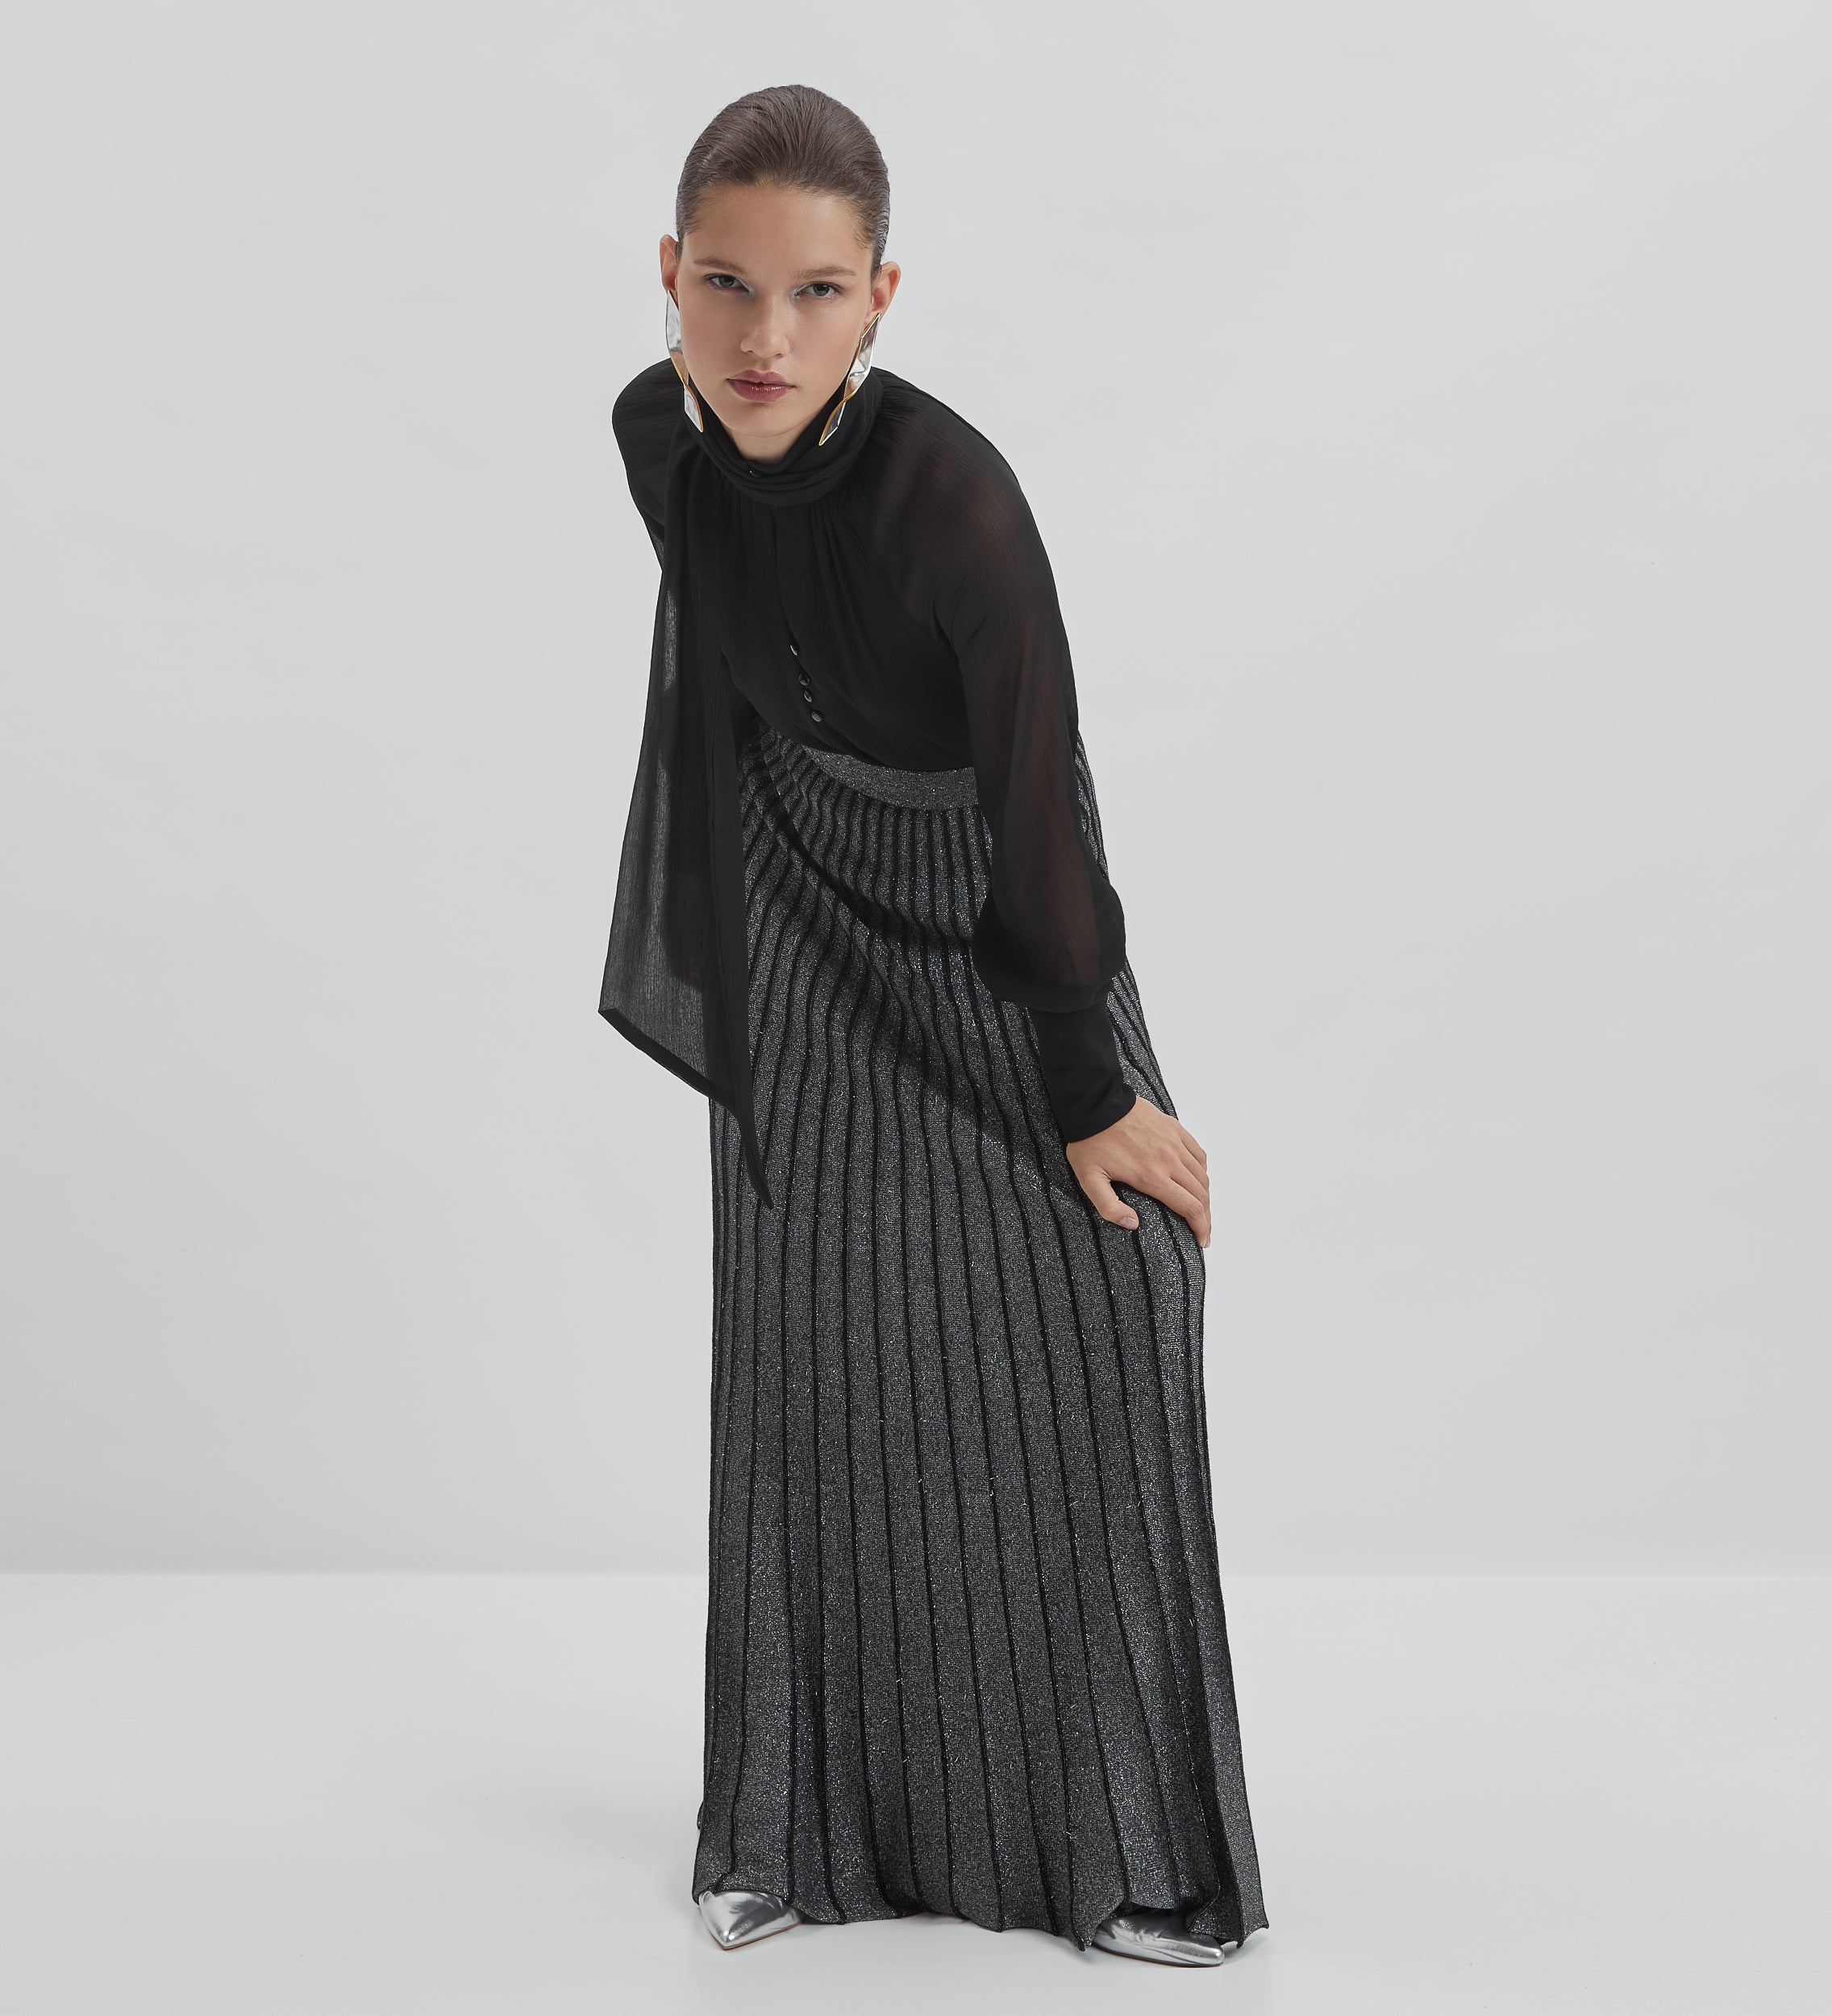 Metallic tricot skirt